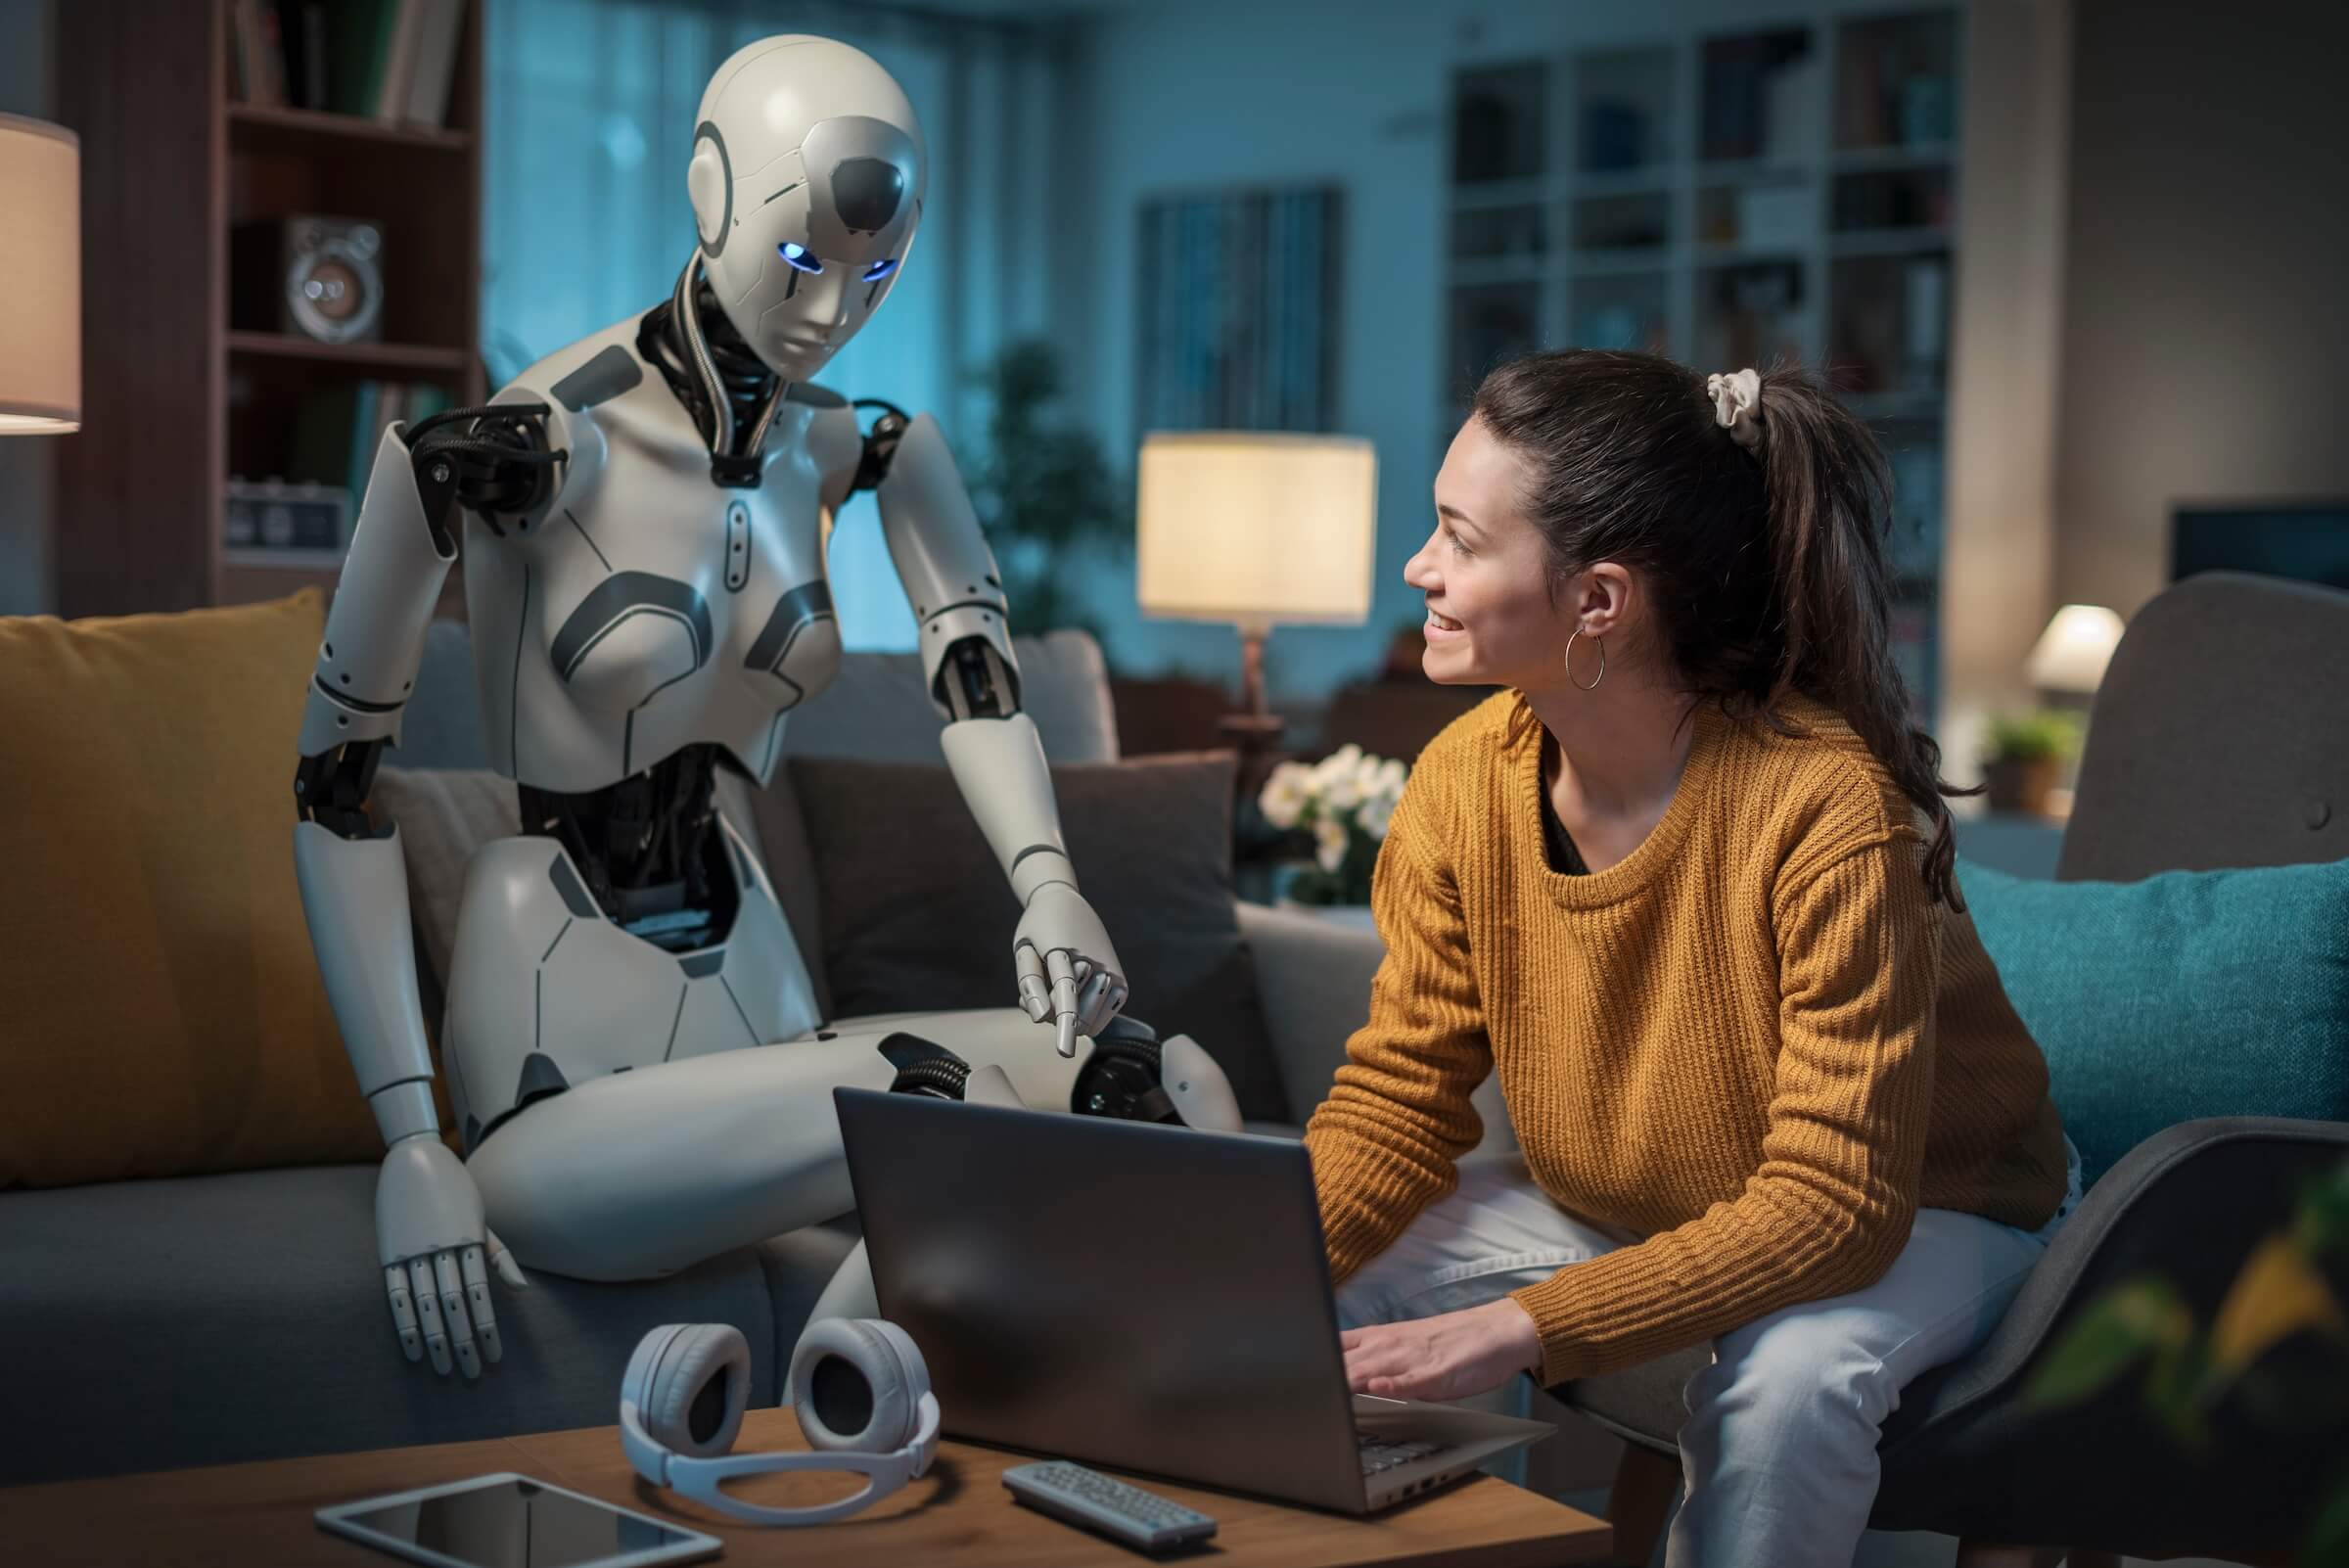 Ładna młoda dziewczyna uczy się za pomocą swojego androida wyposażonego w sztuczną inteligencję. Koncepcja przydatności A.I. w codziennym życiu ludzi.